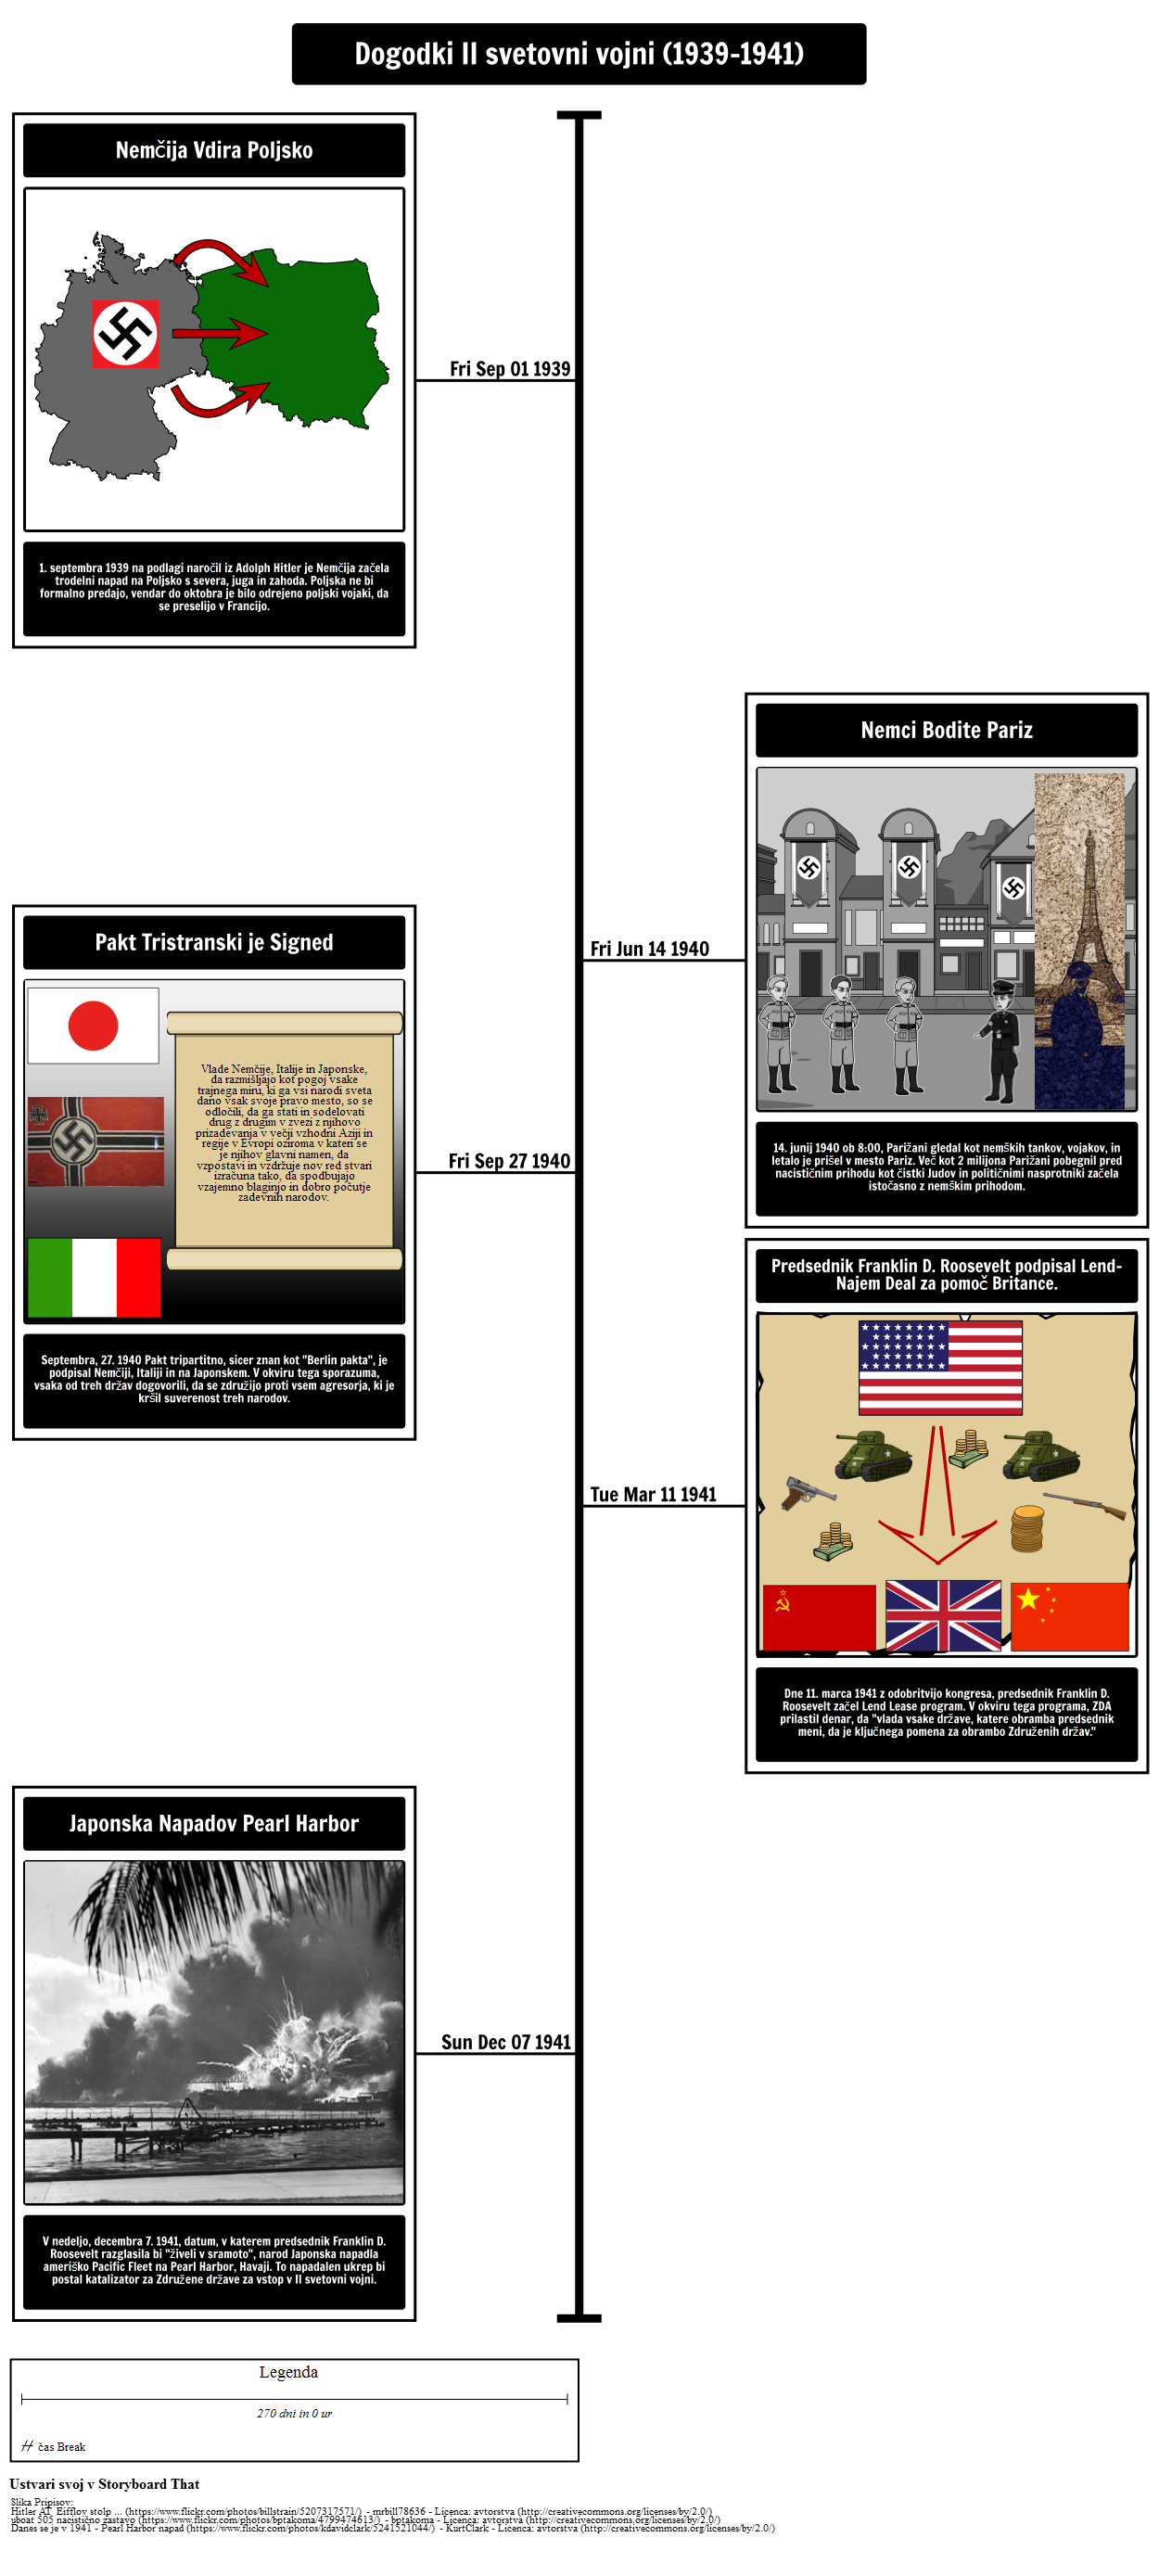 World War II Timeline 19391941 Kuvakäsikirjoitus by slexamples